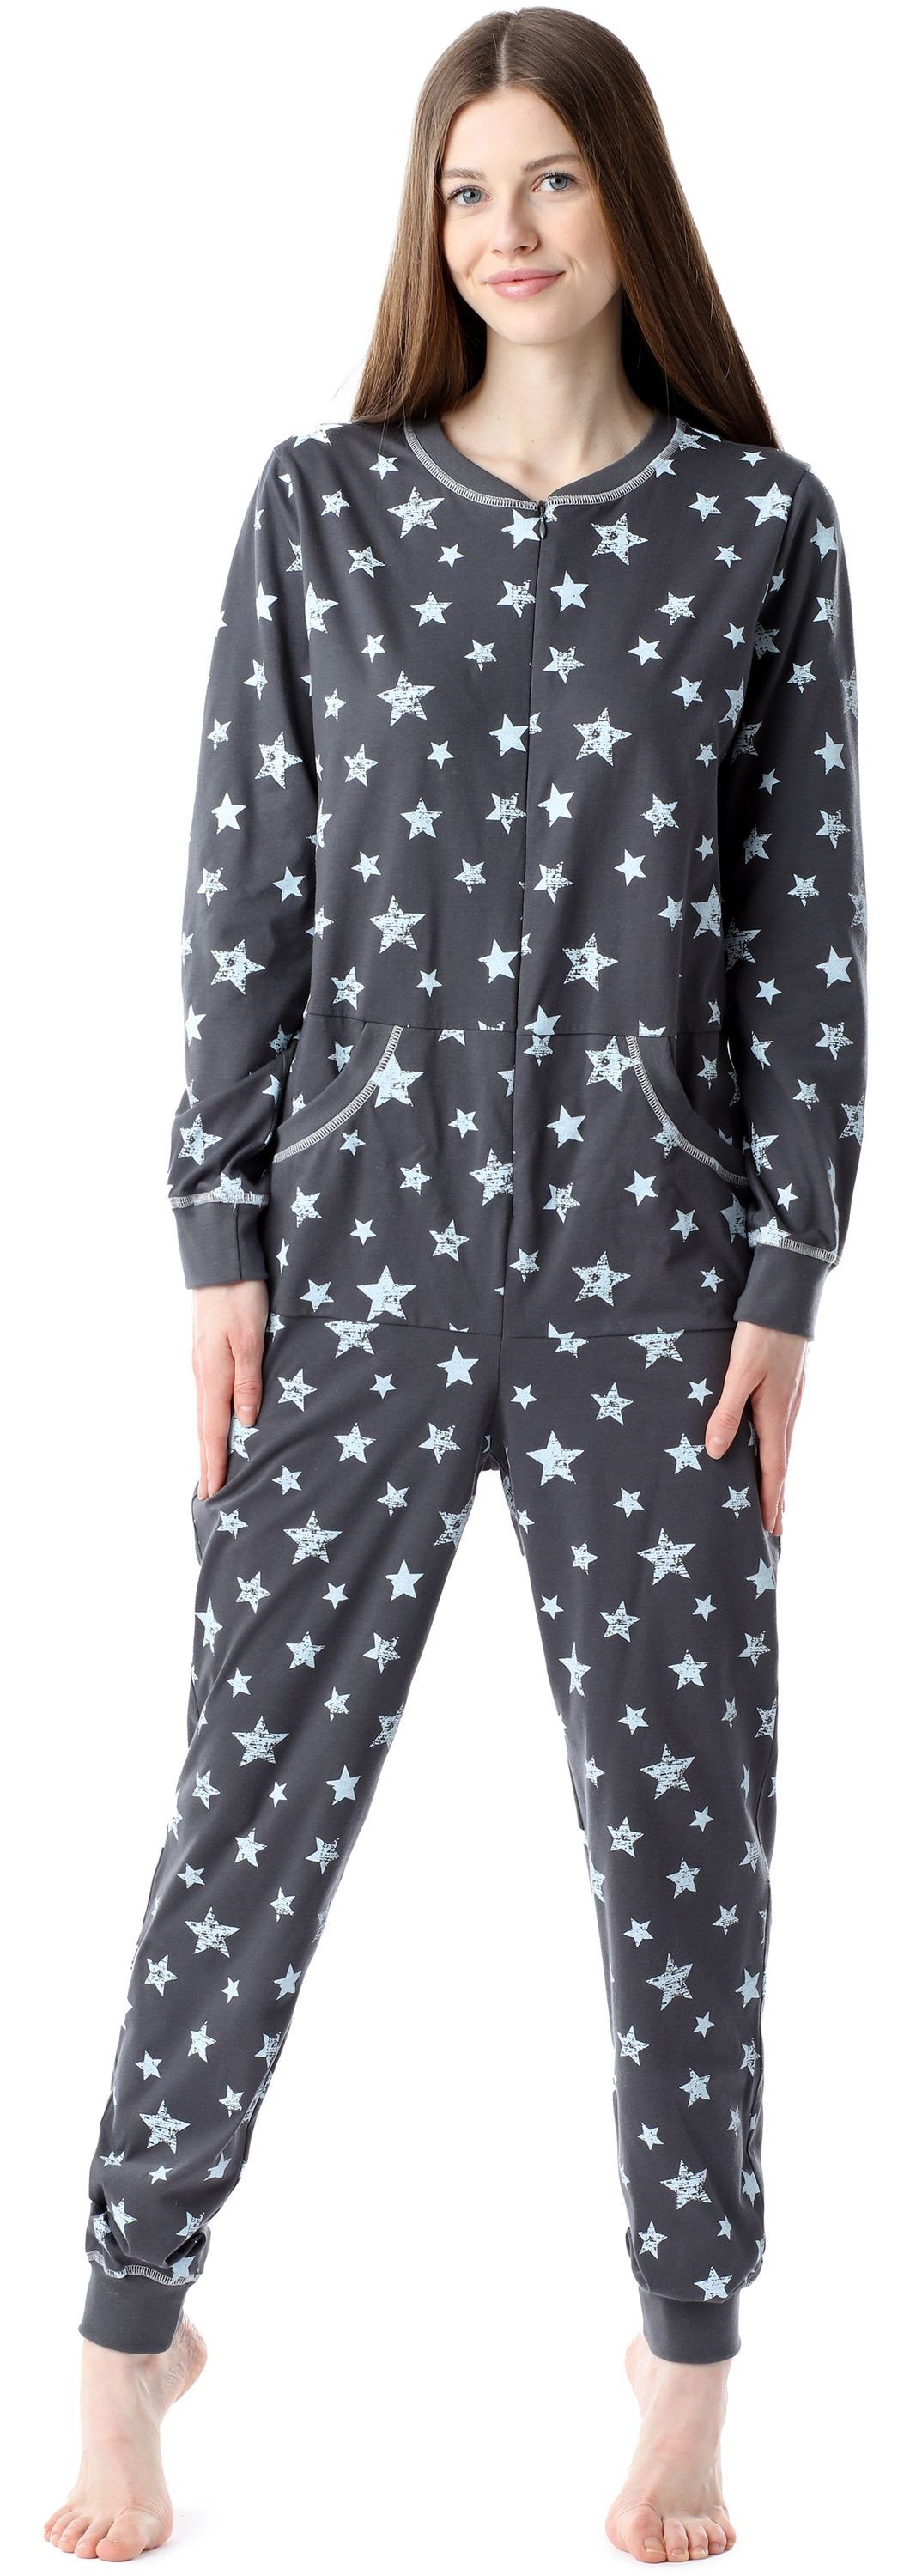 Bellivalini Pyjama Damen Schlafanzug Schlafoverall BLV50-206 Graphite/Blaue Sterne